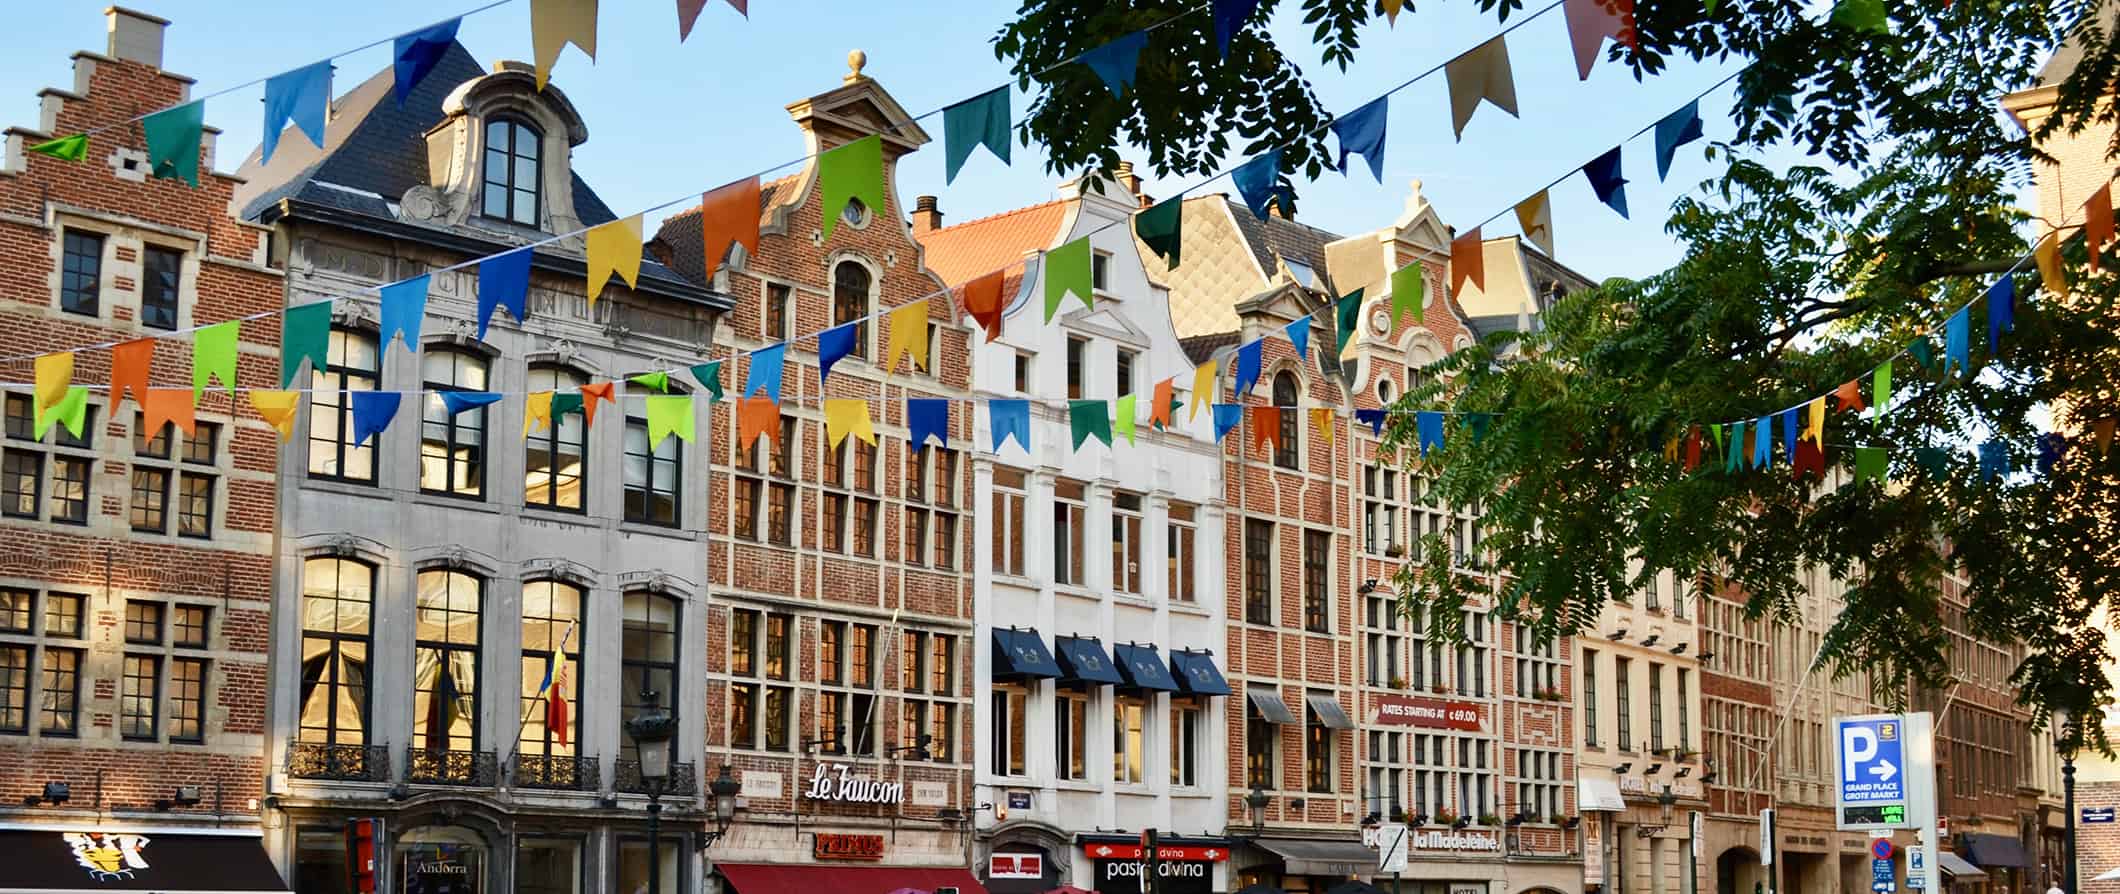 Ruas coloridas e casas antigas em Bruxelas, Bélgica